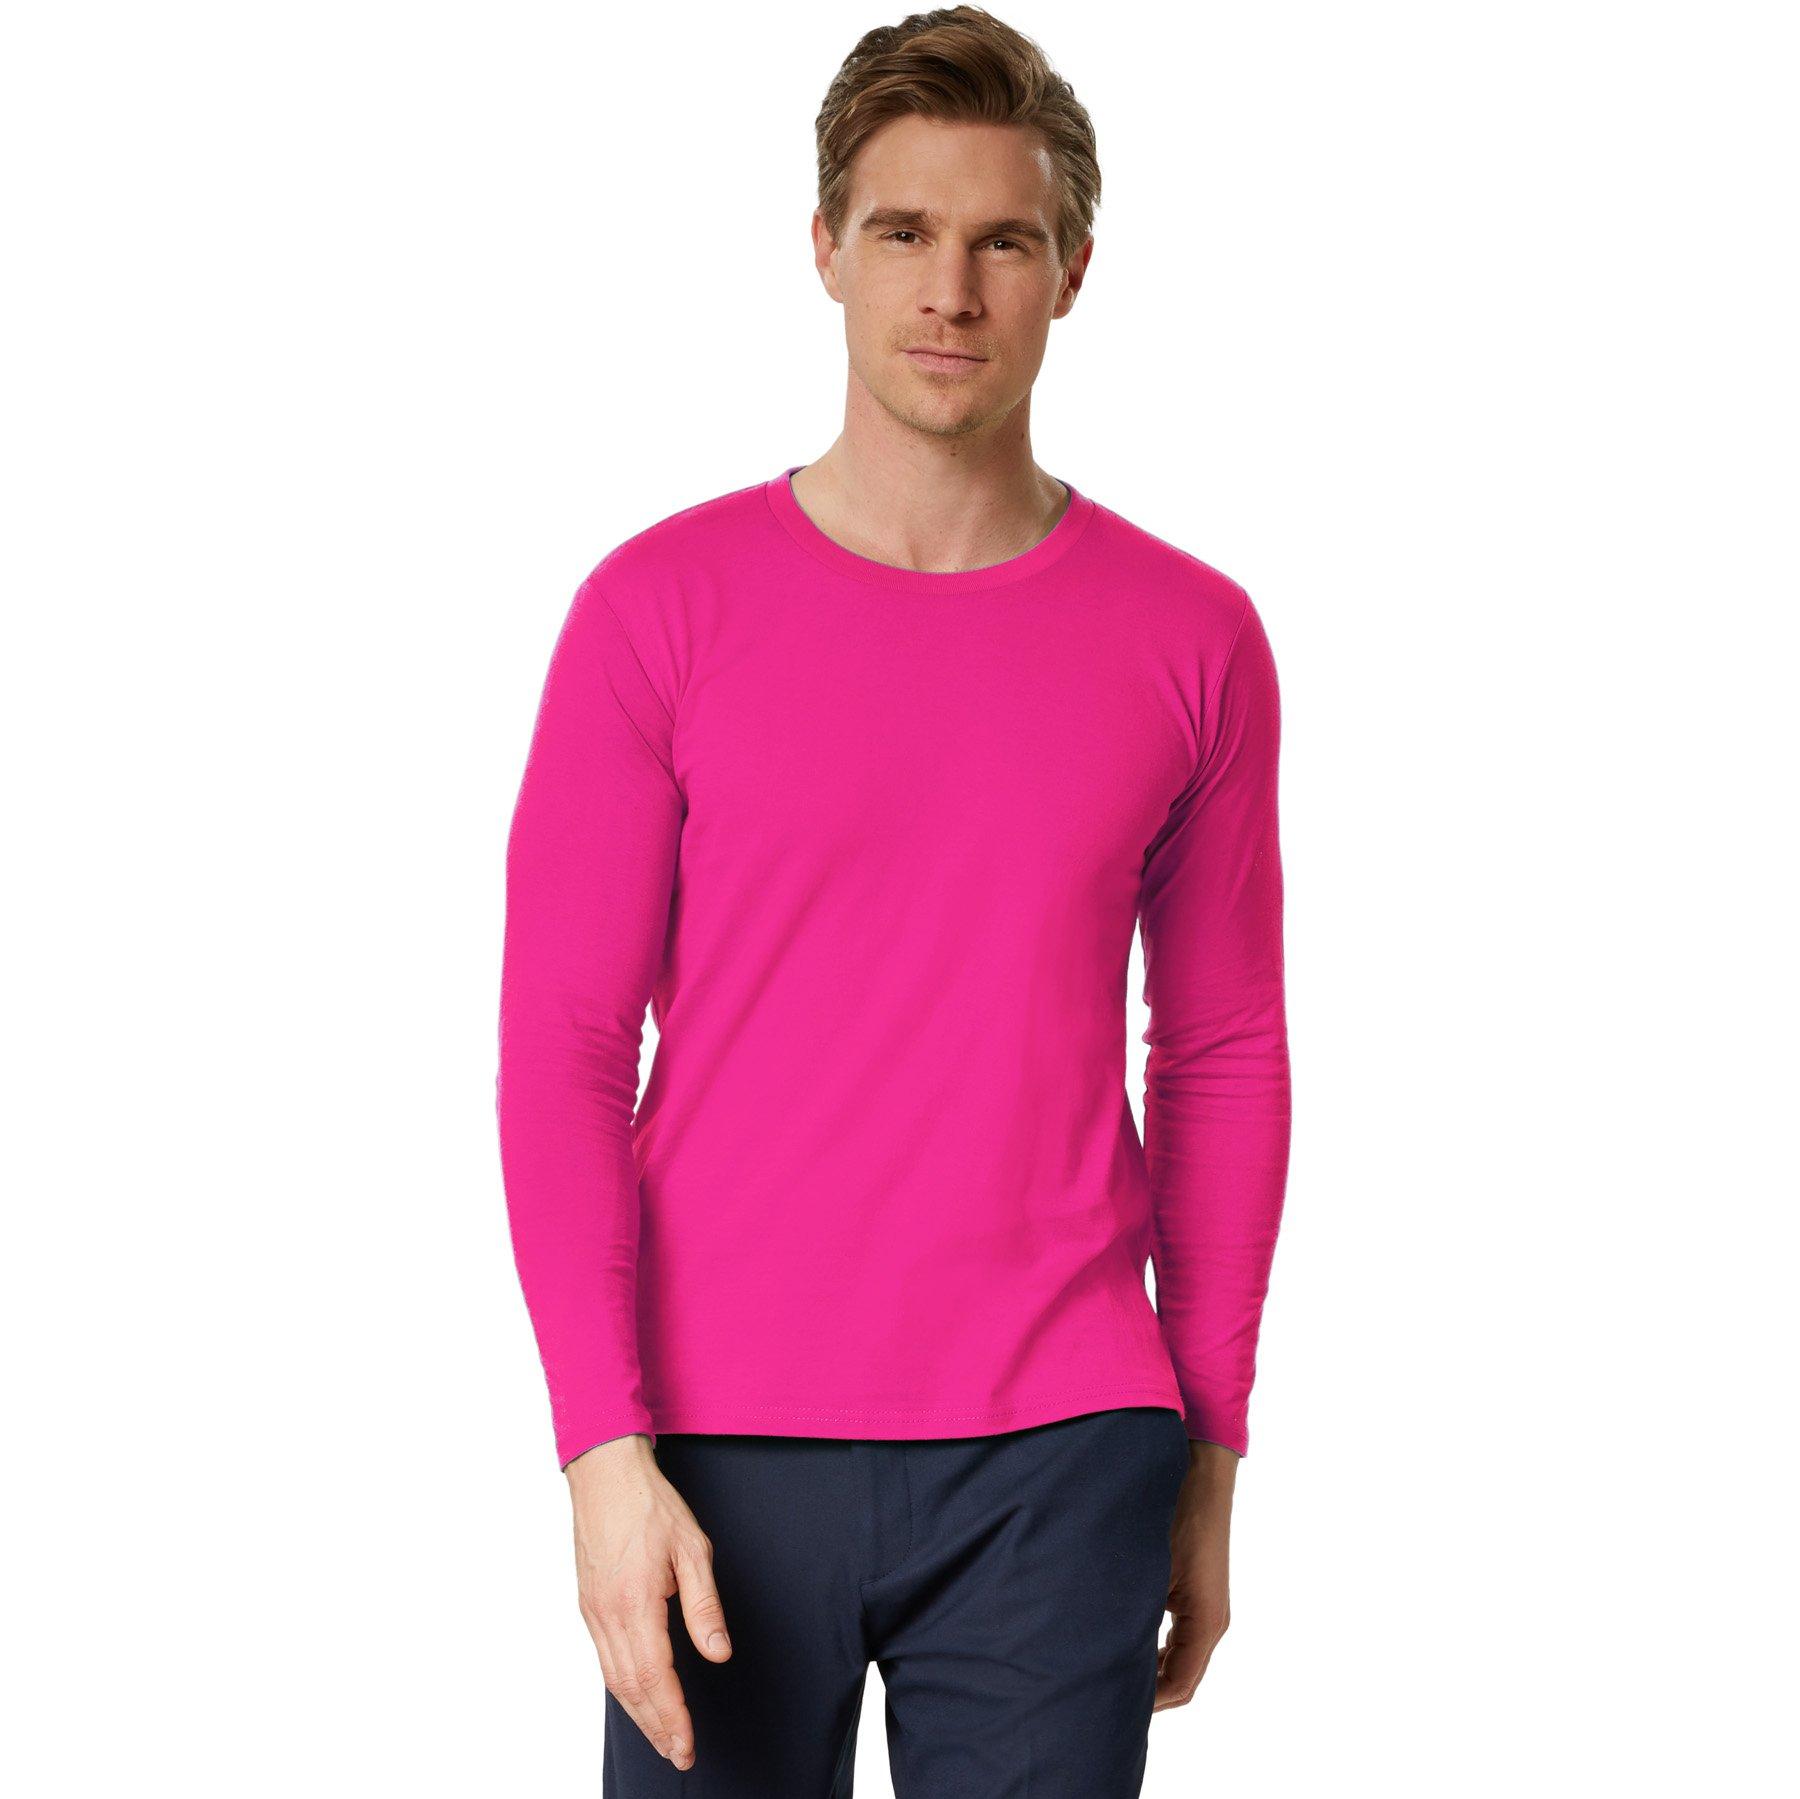 Langarm-shirt Männer Herren Pink M von Tectake